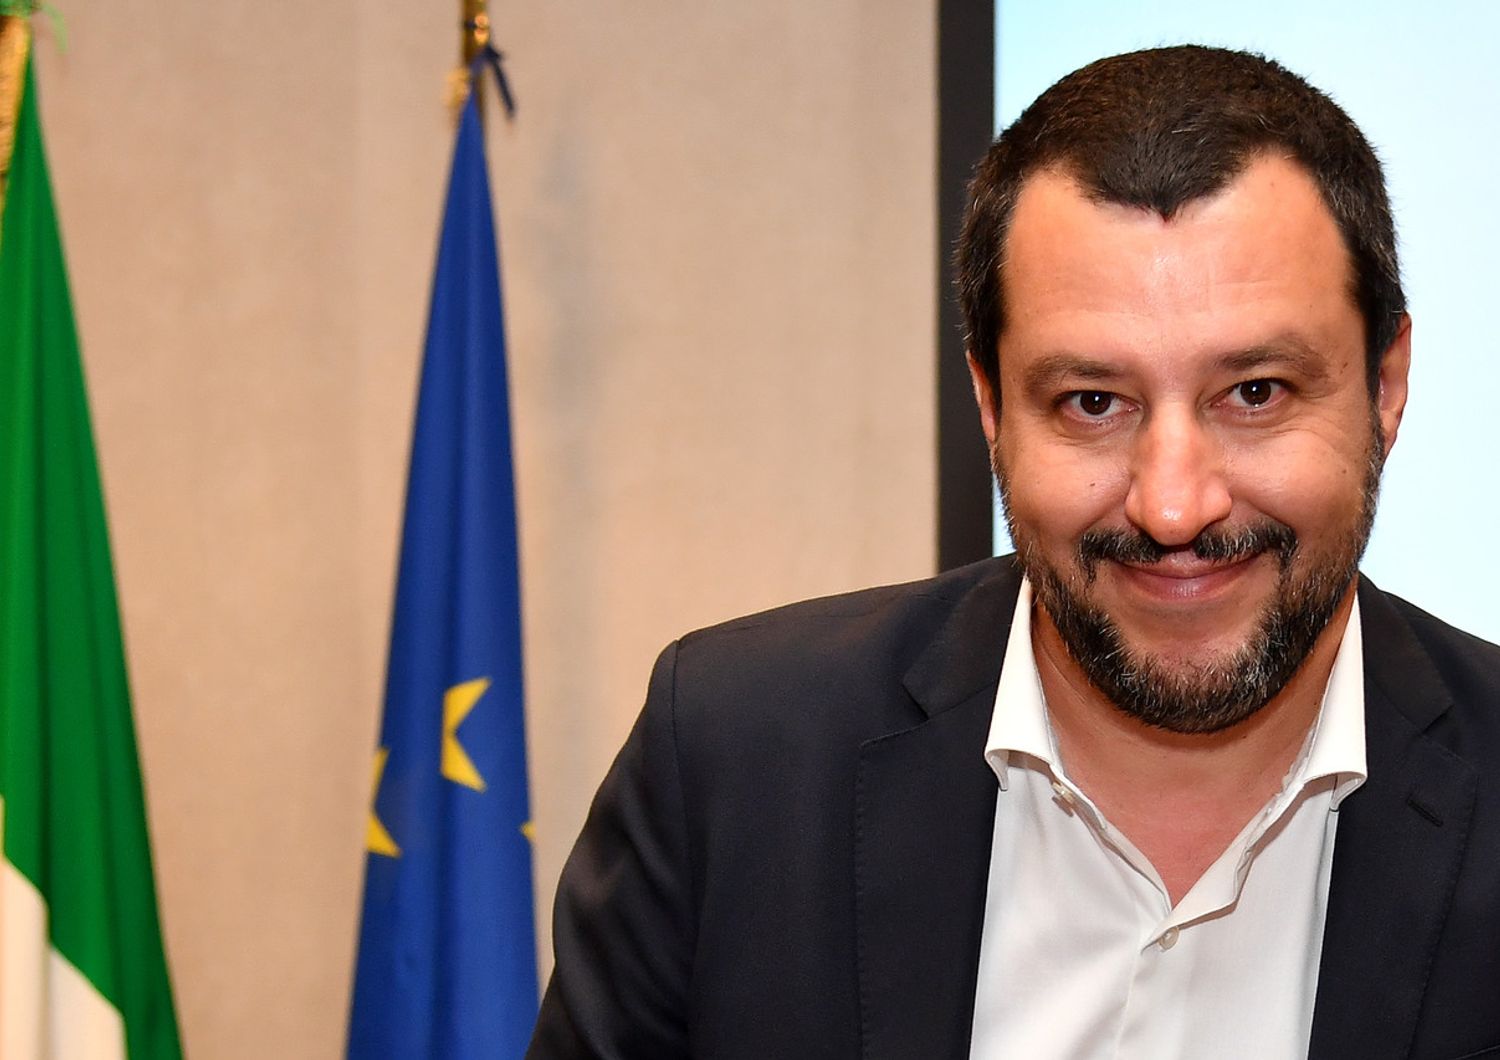 &Egrave; davvero cos&igrave; difficile (come dice Salvini) negare l&#39;asilo politico a un richiedente?